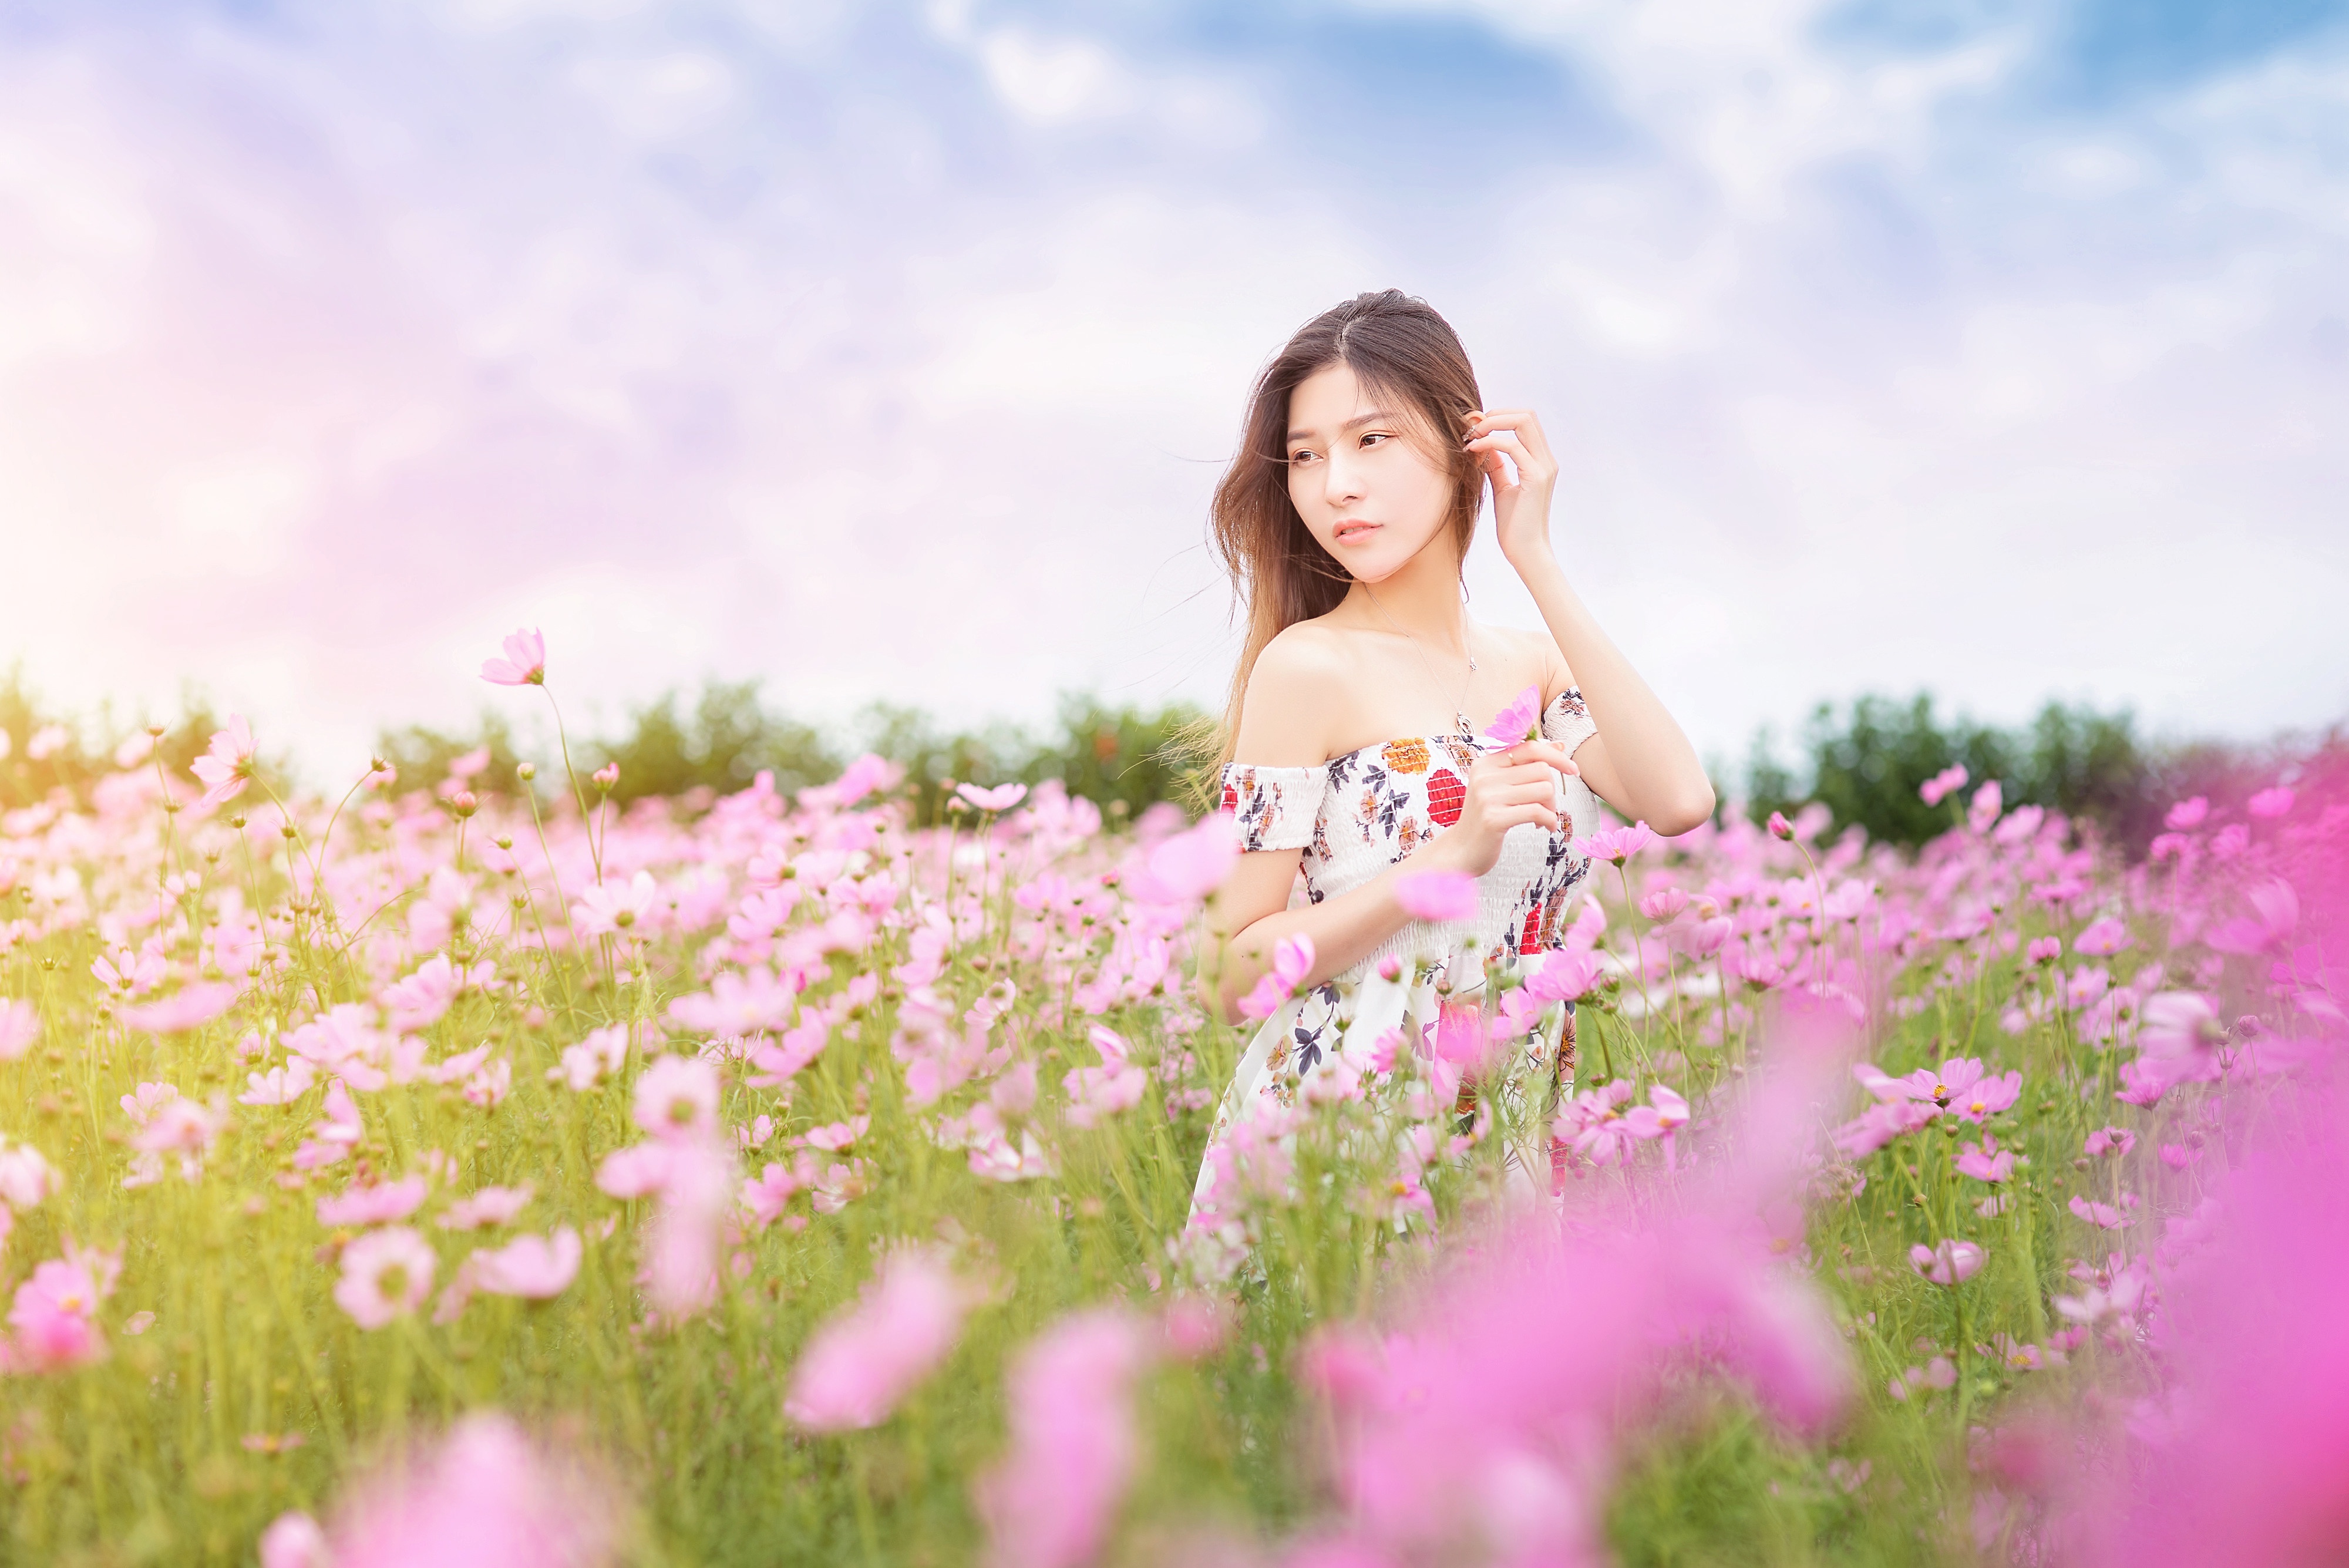 Asian Brunette Cosmos Dress Flower Girl Model Pink Flower Summer Woman 4000x2670